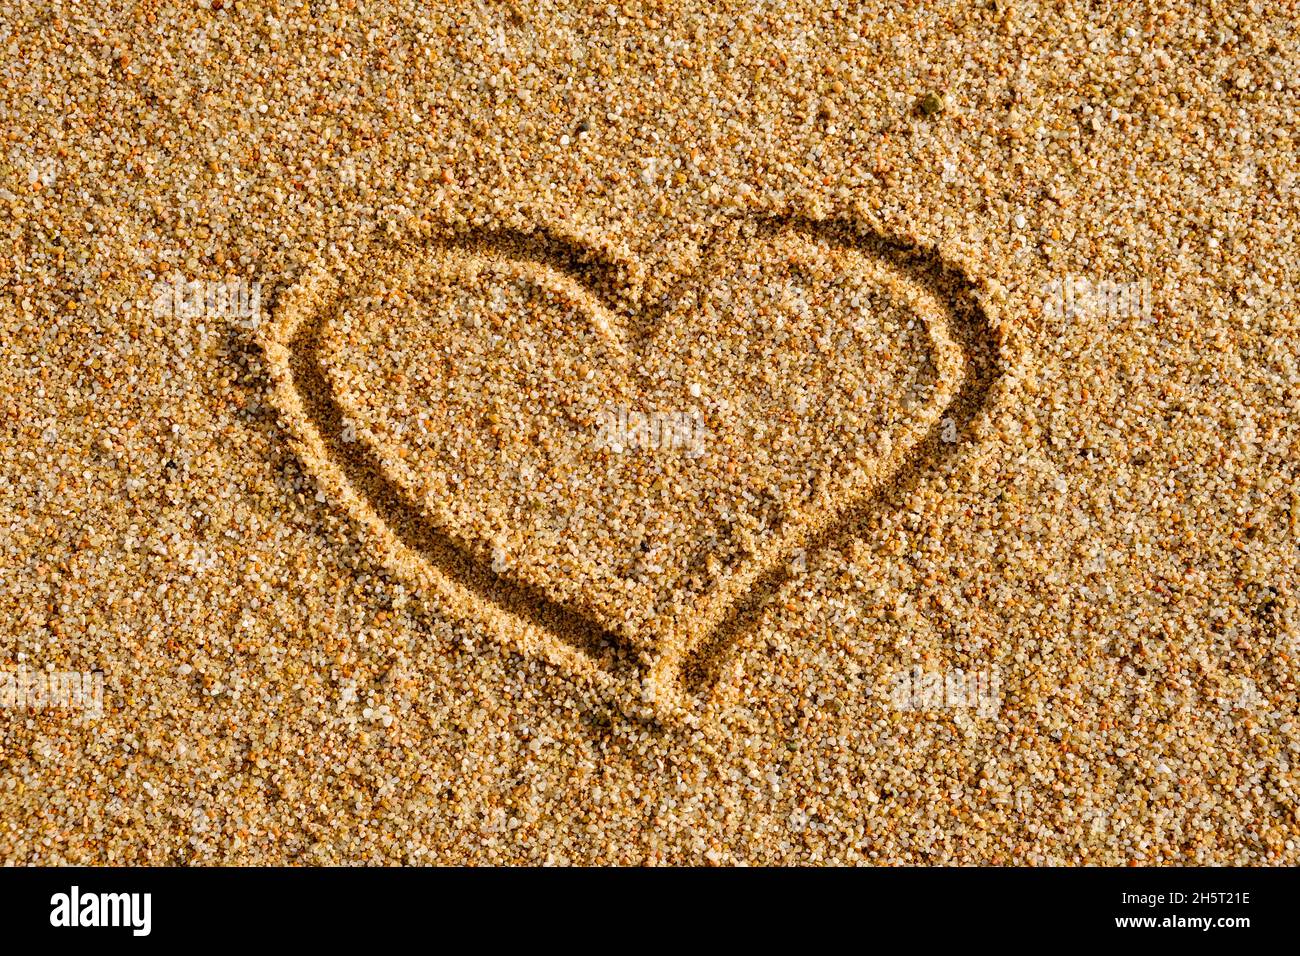 Herzzeichen auf Sand in Abendsonne geschrieben Stockfoto